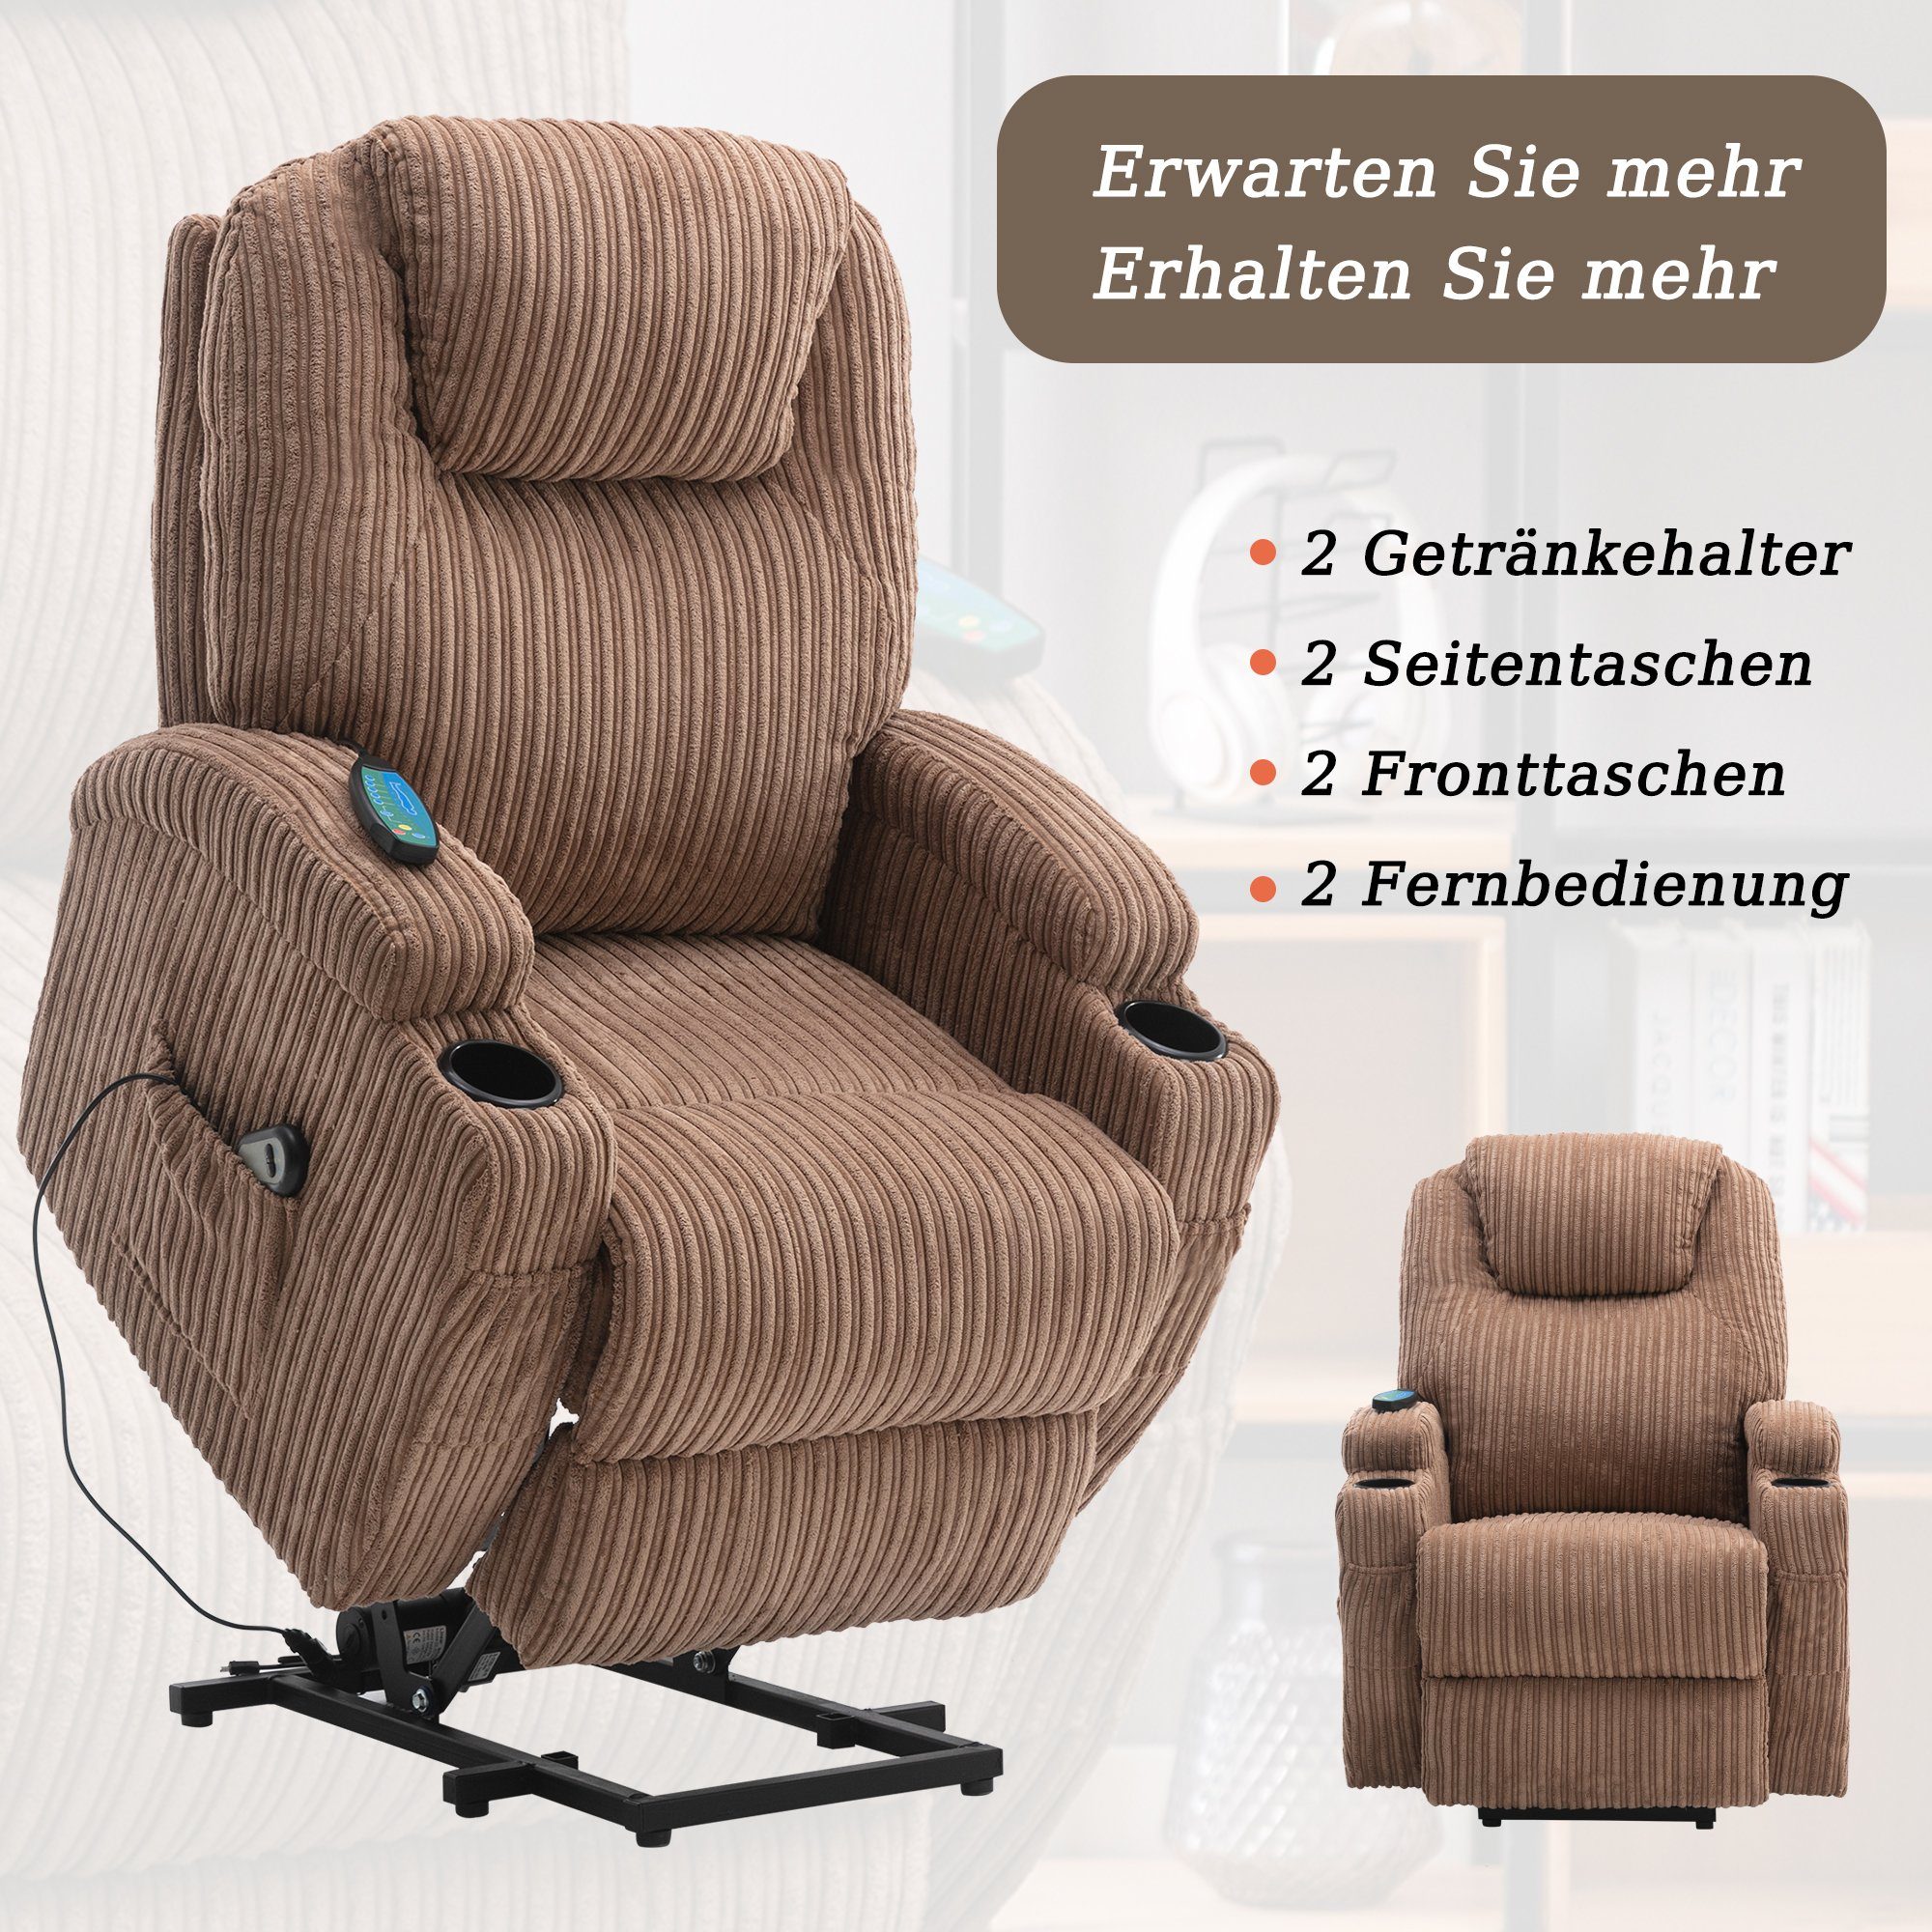 und und USB Merax relaxfunktion, Massagesessel Wärmefunktion TV-Sessel Braun Vibrationsmassage, mit Fernbedienung